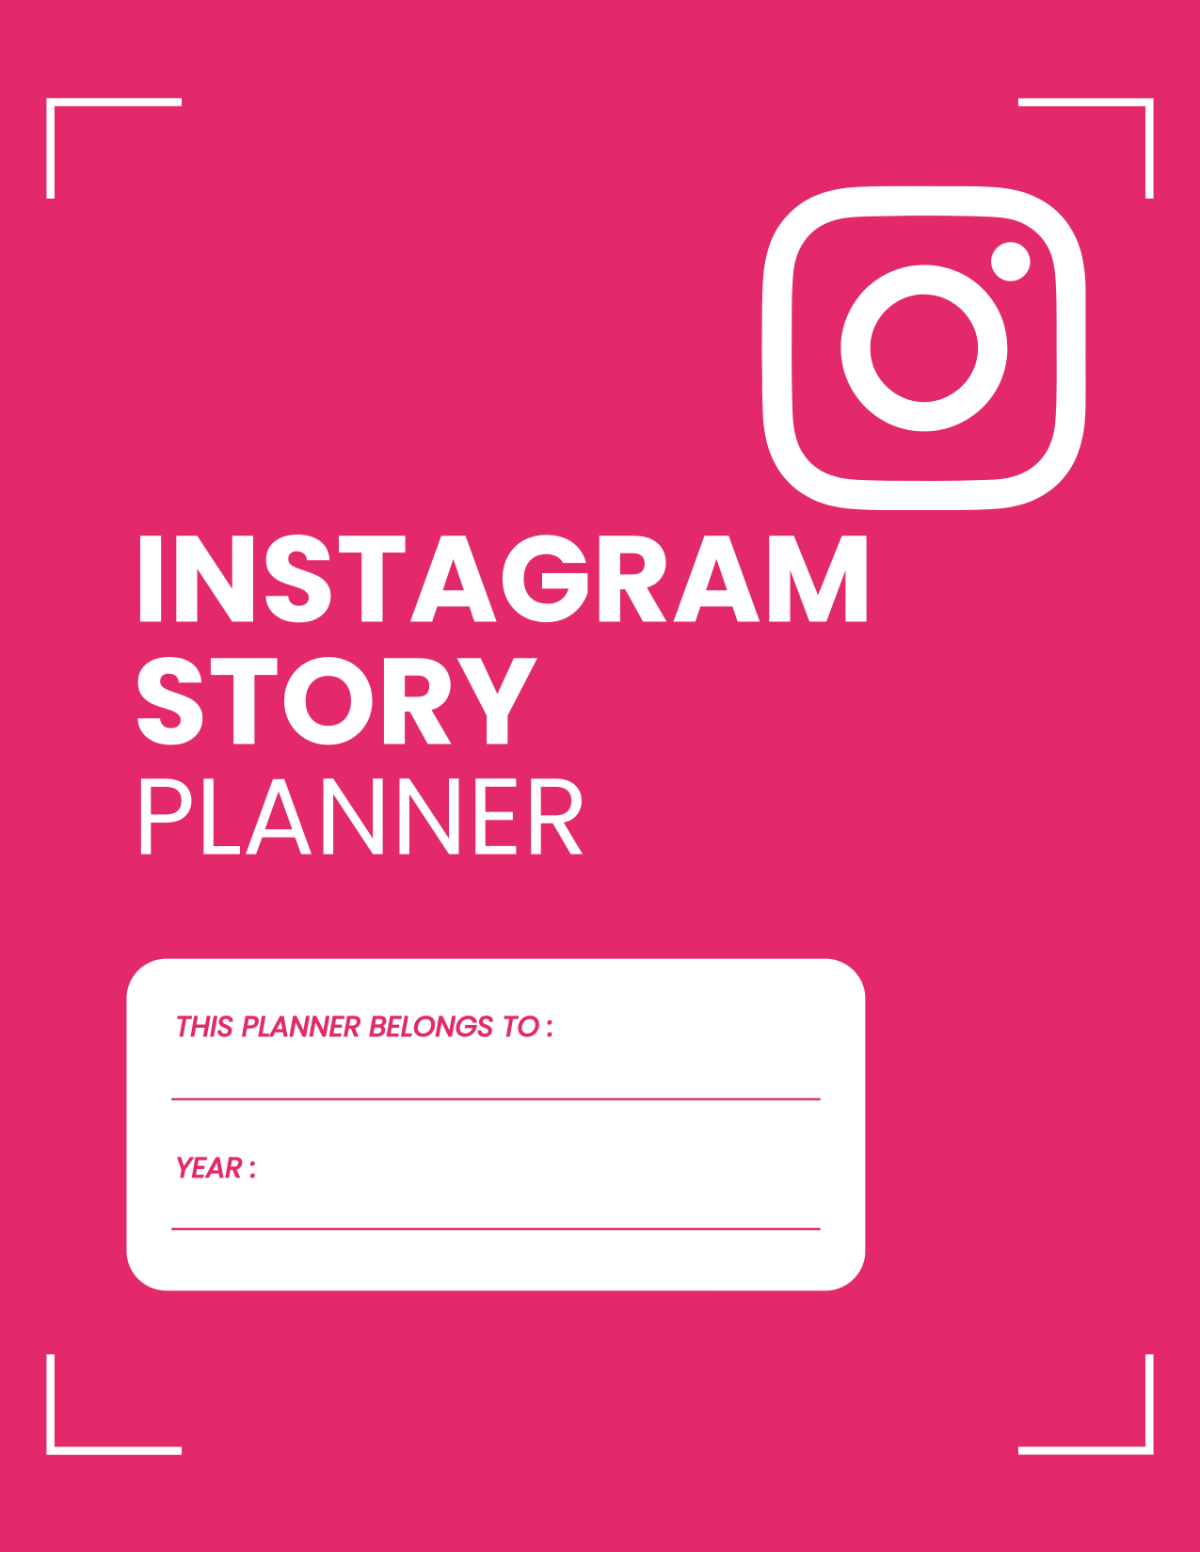 Instagram Story Planner